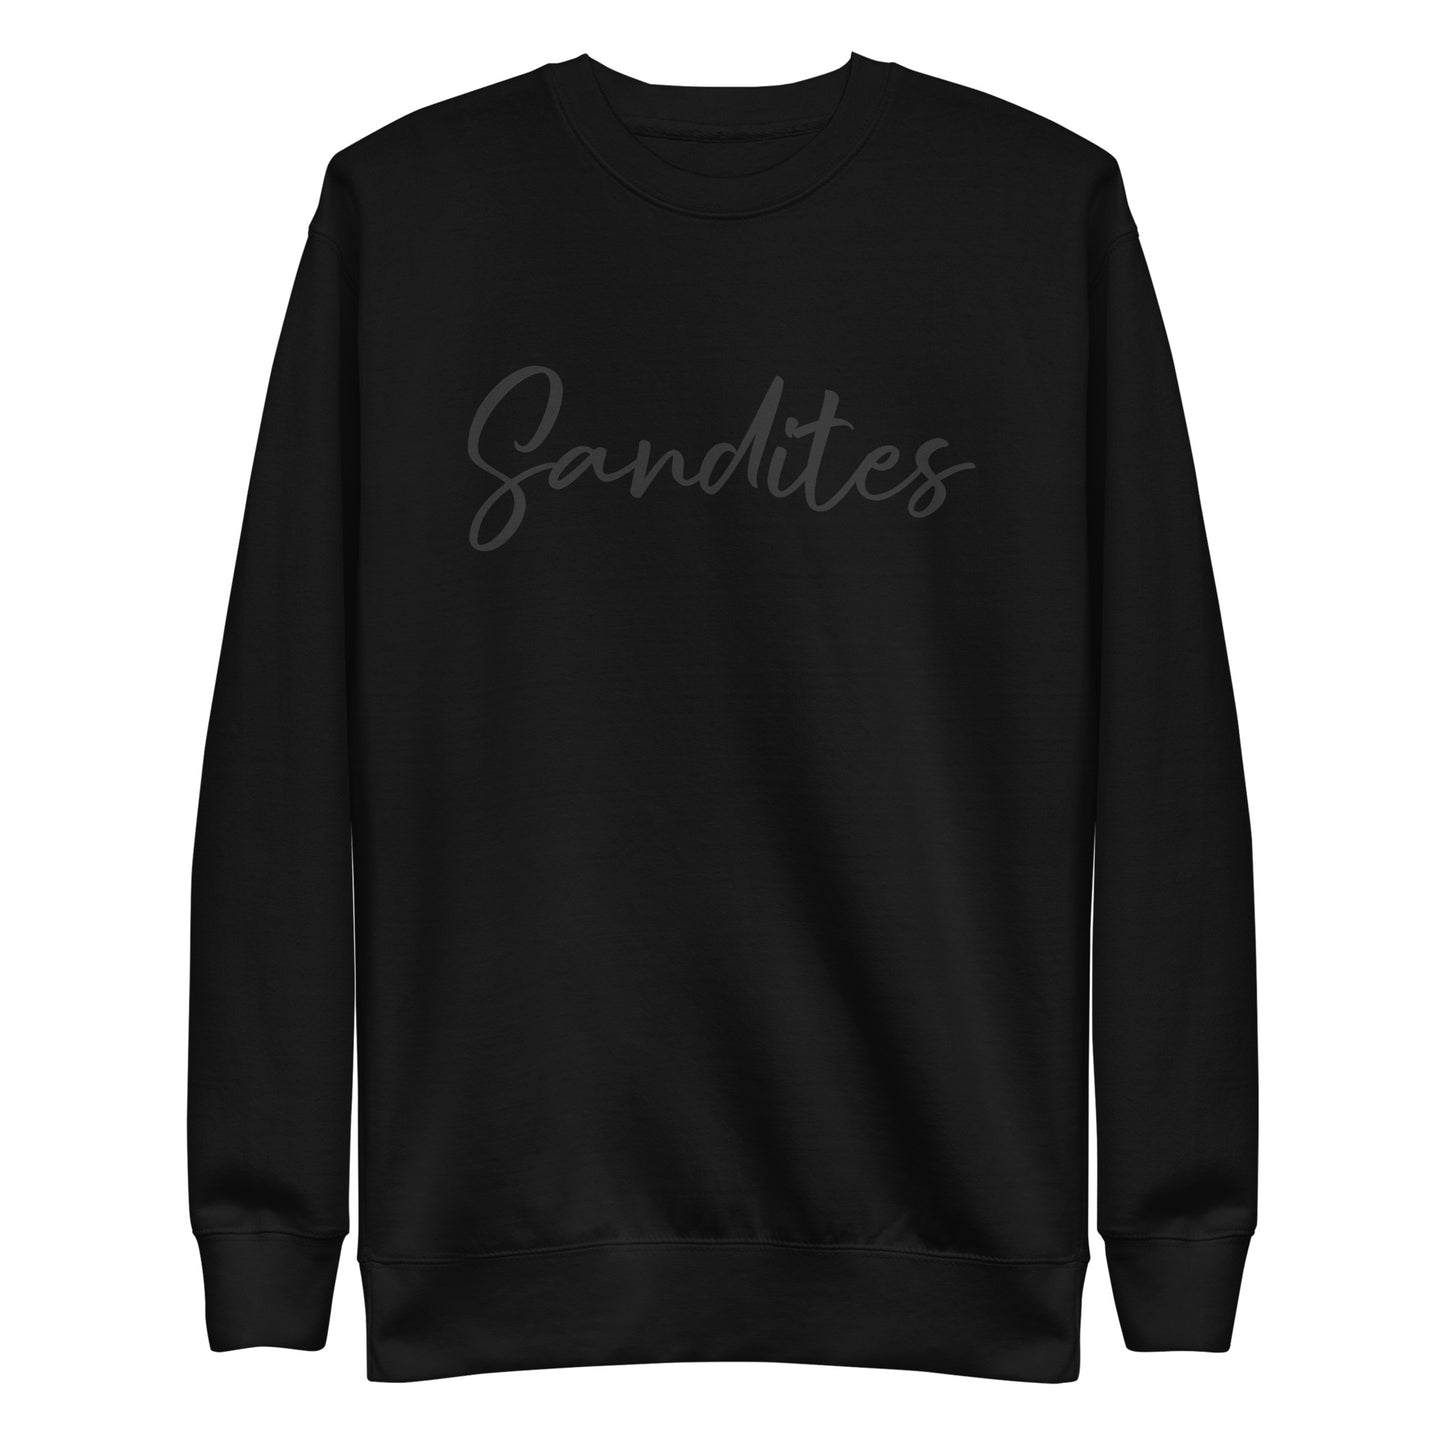 Sandites - Black Logo - Adult Sweatshirt